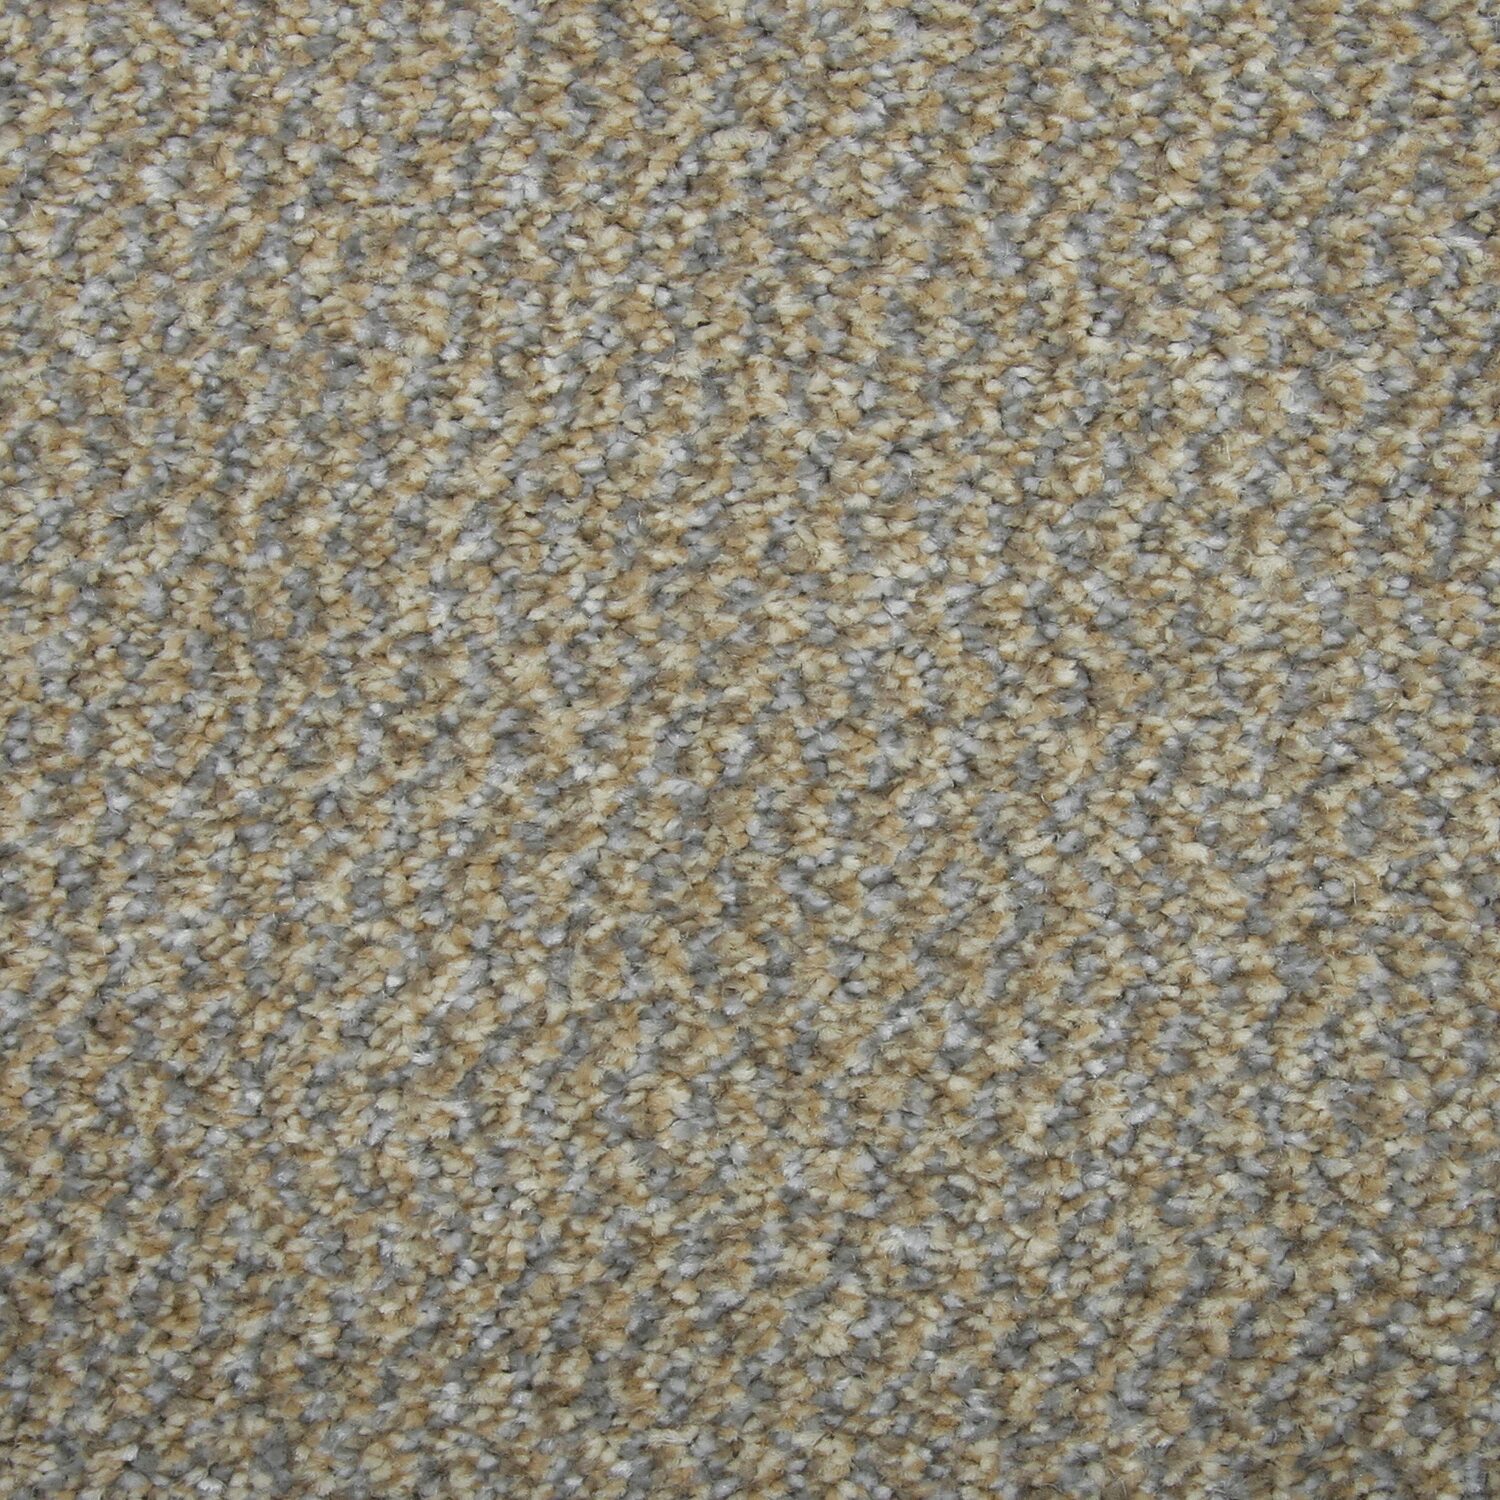 Carpet name: Richmond Tweed Latte